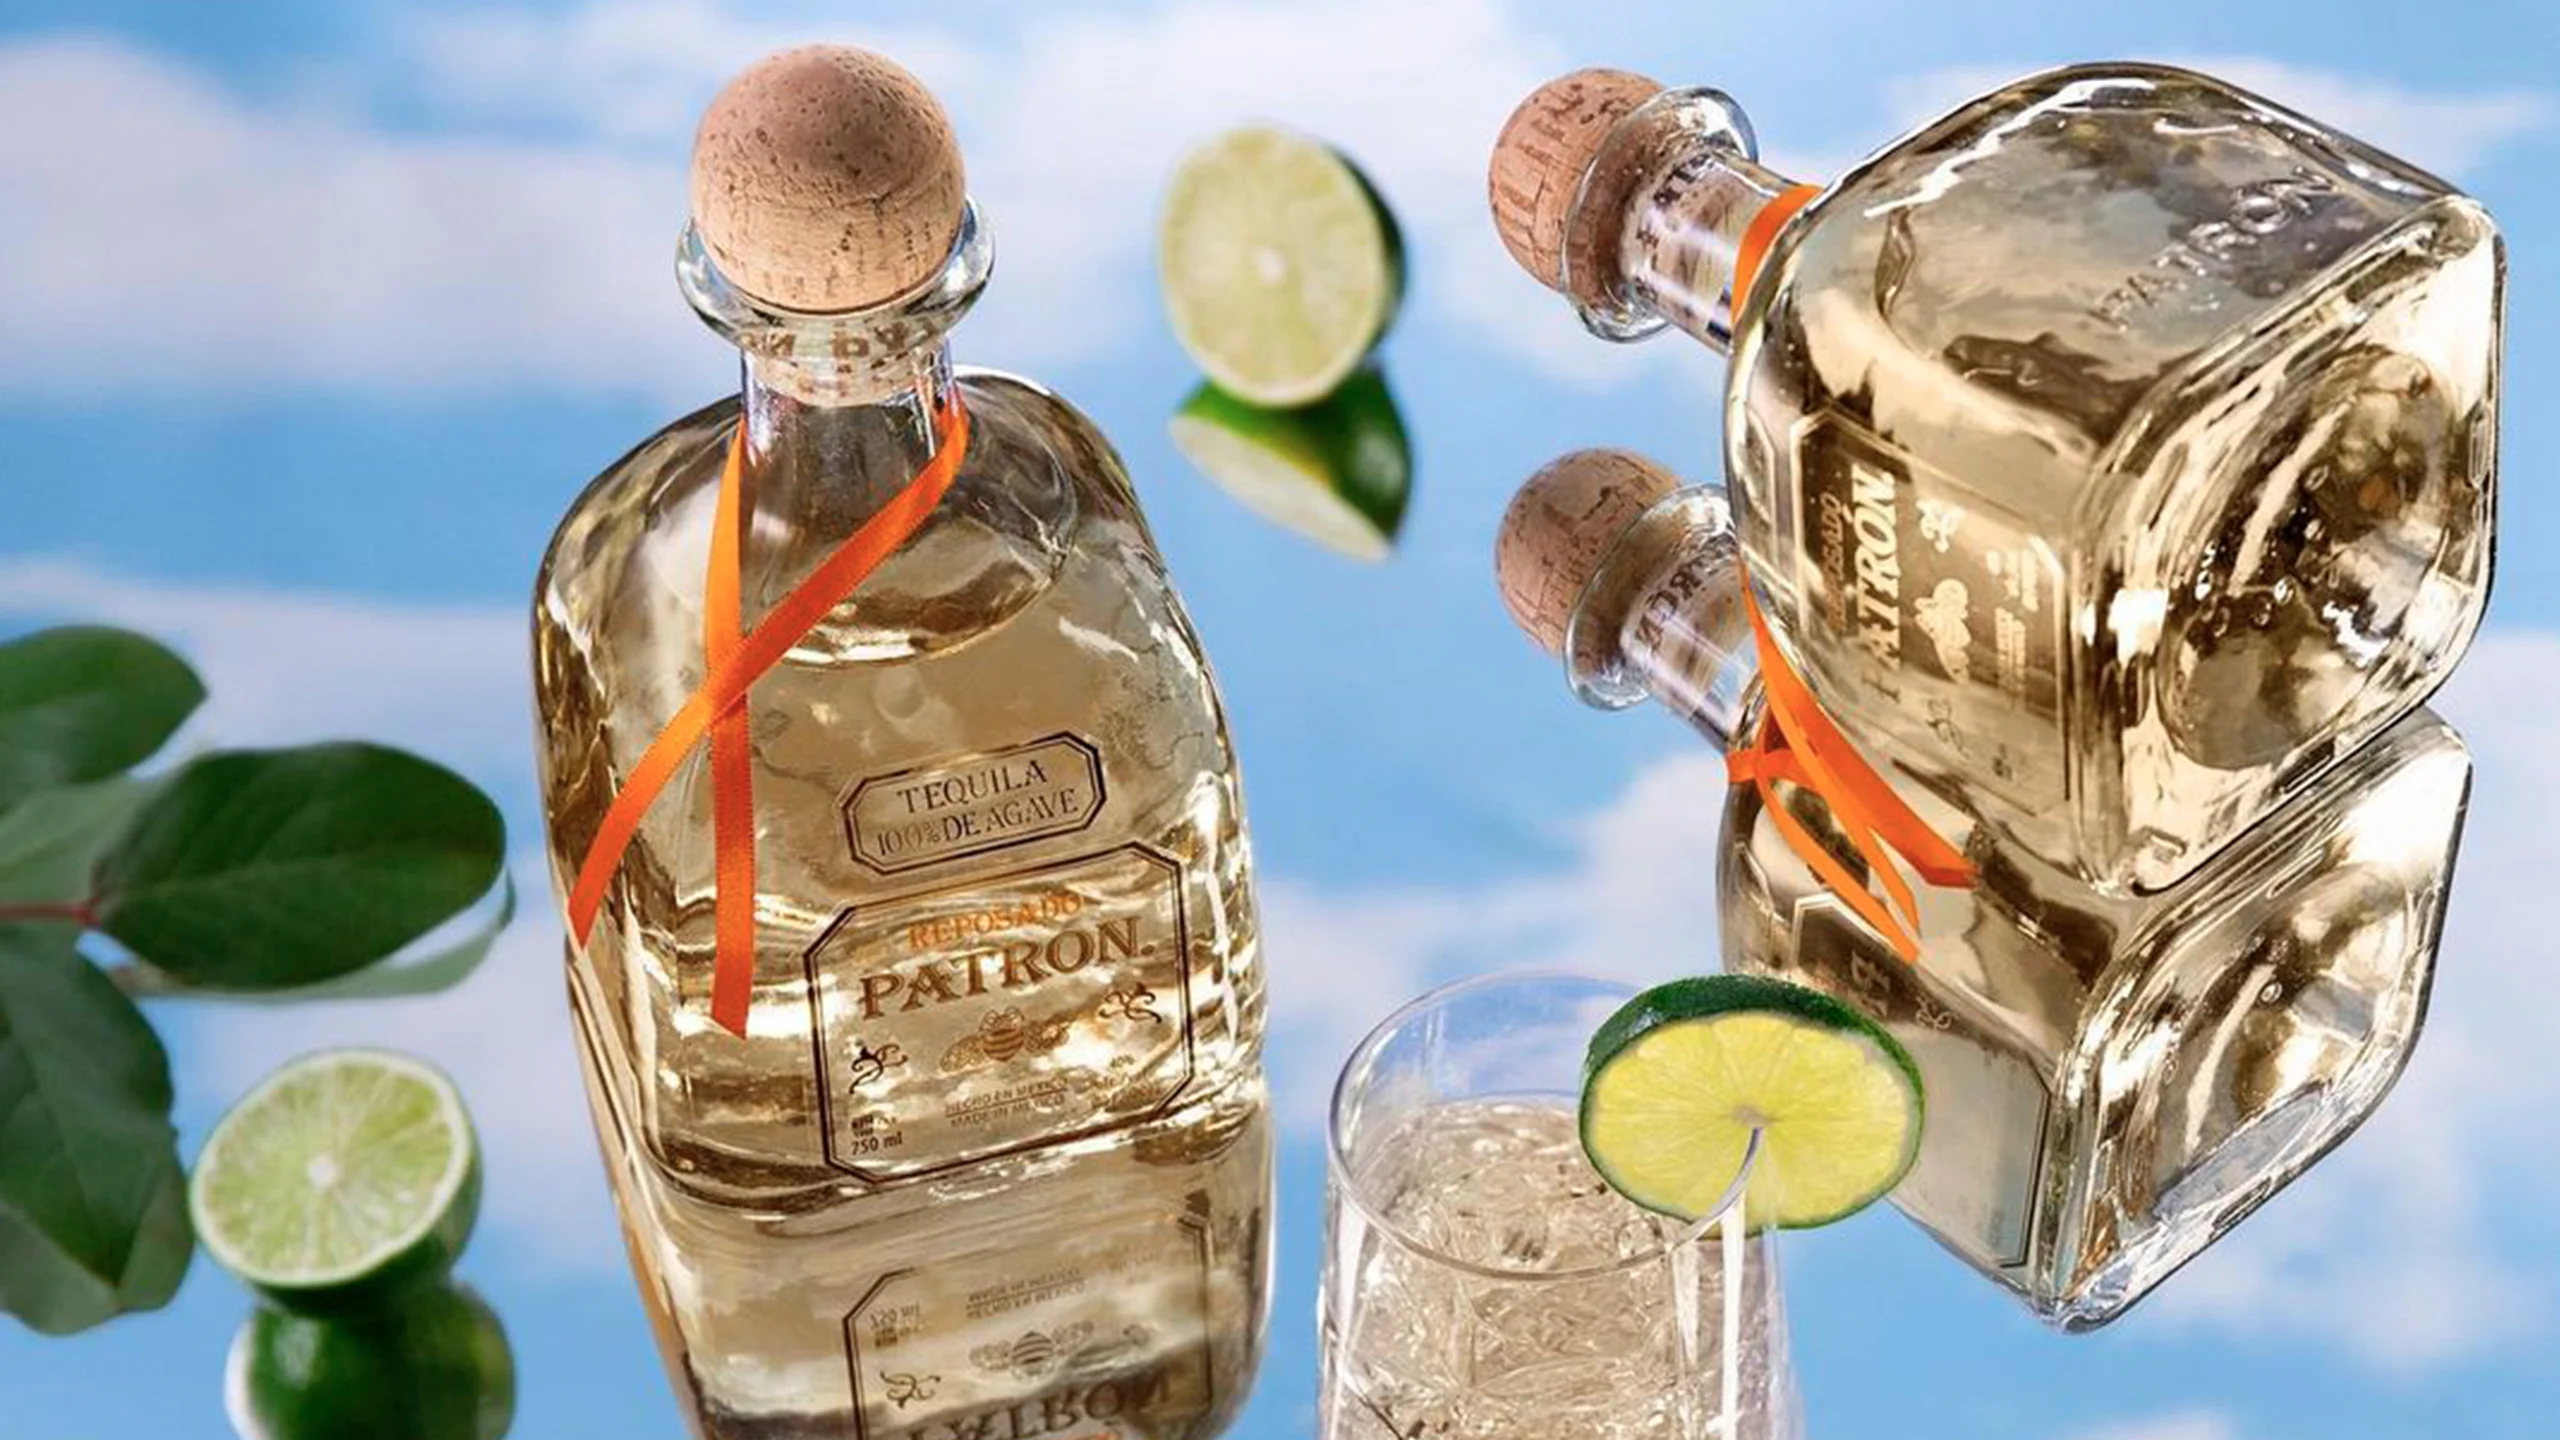 7 características del Tequila Patrón que lo hacen #OrgullosamenteMexicano